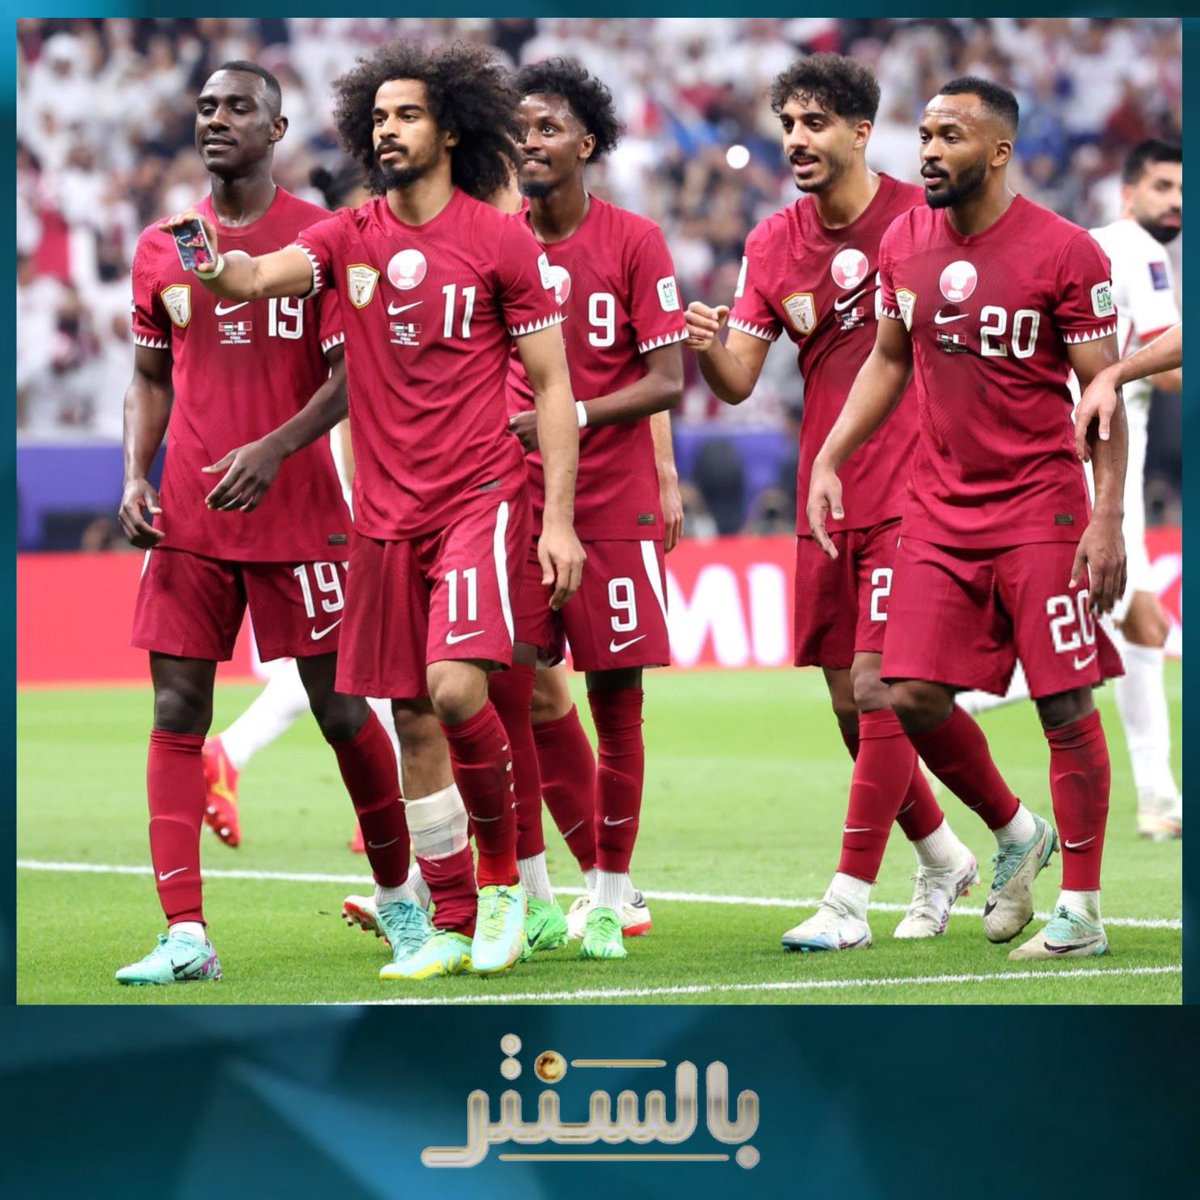 قطر تحتفظ بلقب كأس آسيا بعد فوزها على الأردن 3-1 على استاد لوسيل بفضل هاتريك هداف البطولة أكرم عفيف الذي رفع رصيده إلى 8 أهداف

#الأردن_قطر #كأس_آسيا2023
#قطر #الأردن #الكويت #بالسنتر